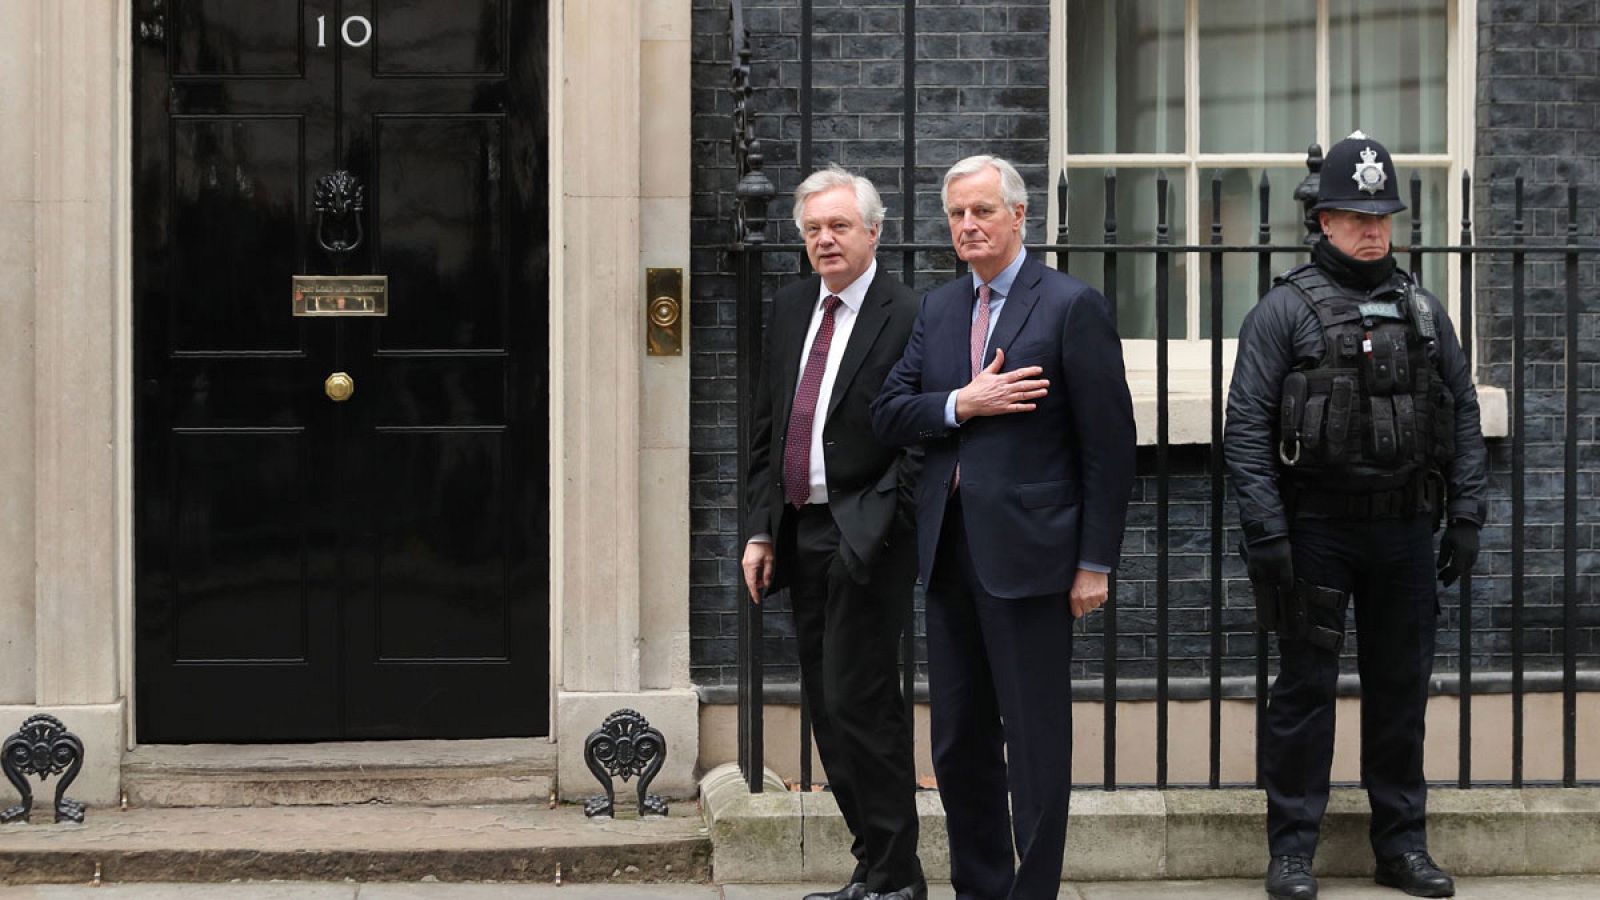 El jefe negociador de la Comisión Europea para el Brexit, Michel Barnier, es recibido en Downing Street por el secretario de Estado británico para el Brexit, David Davis